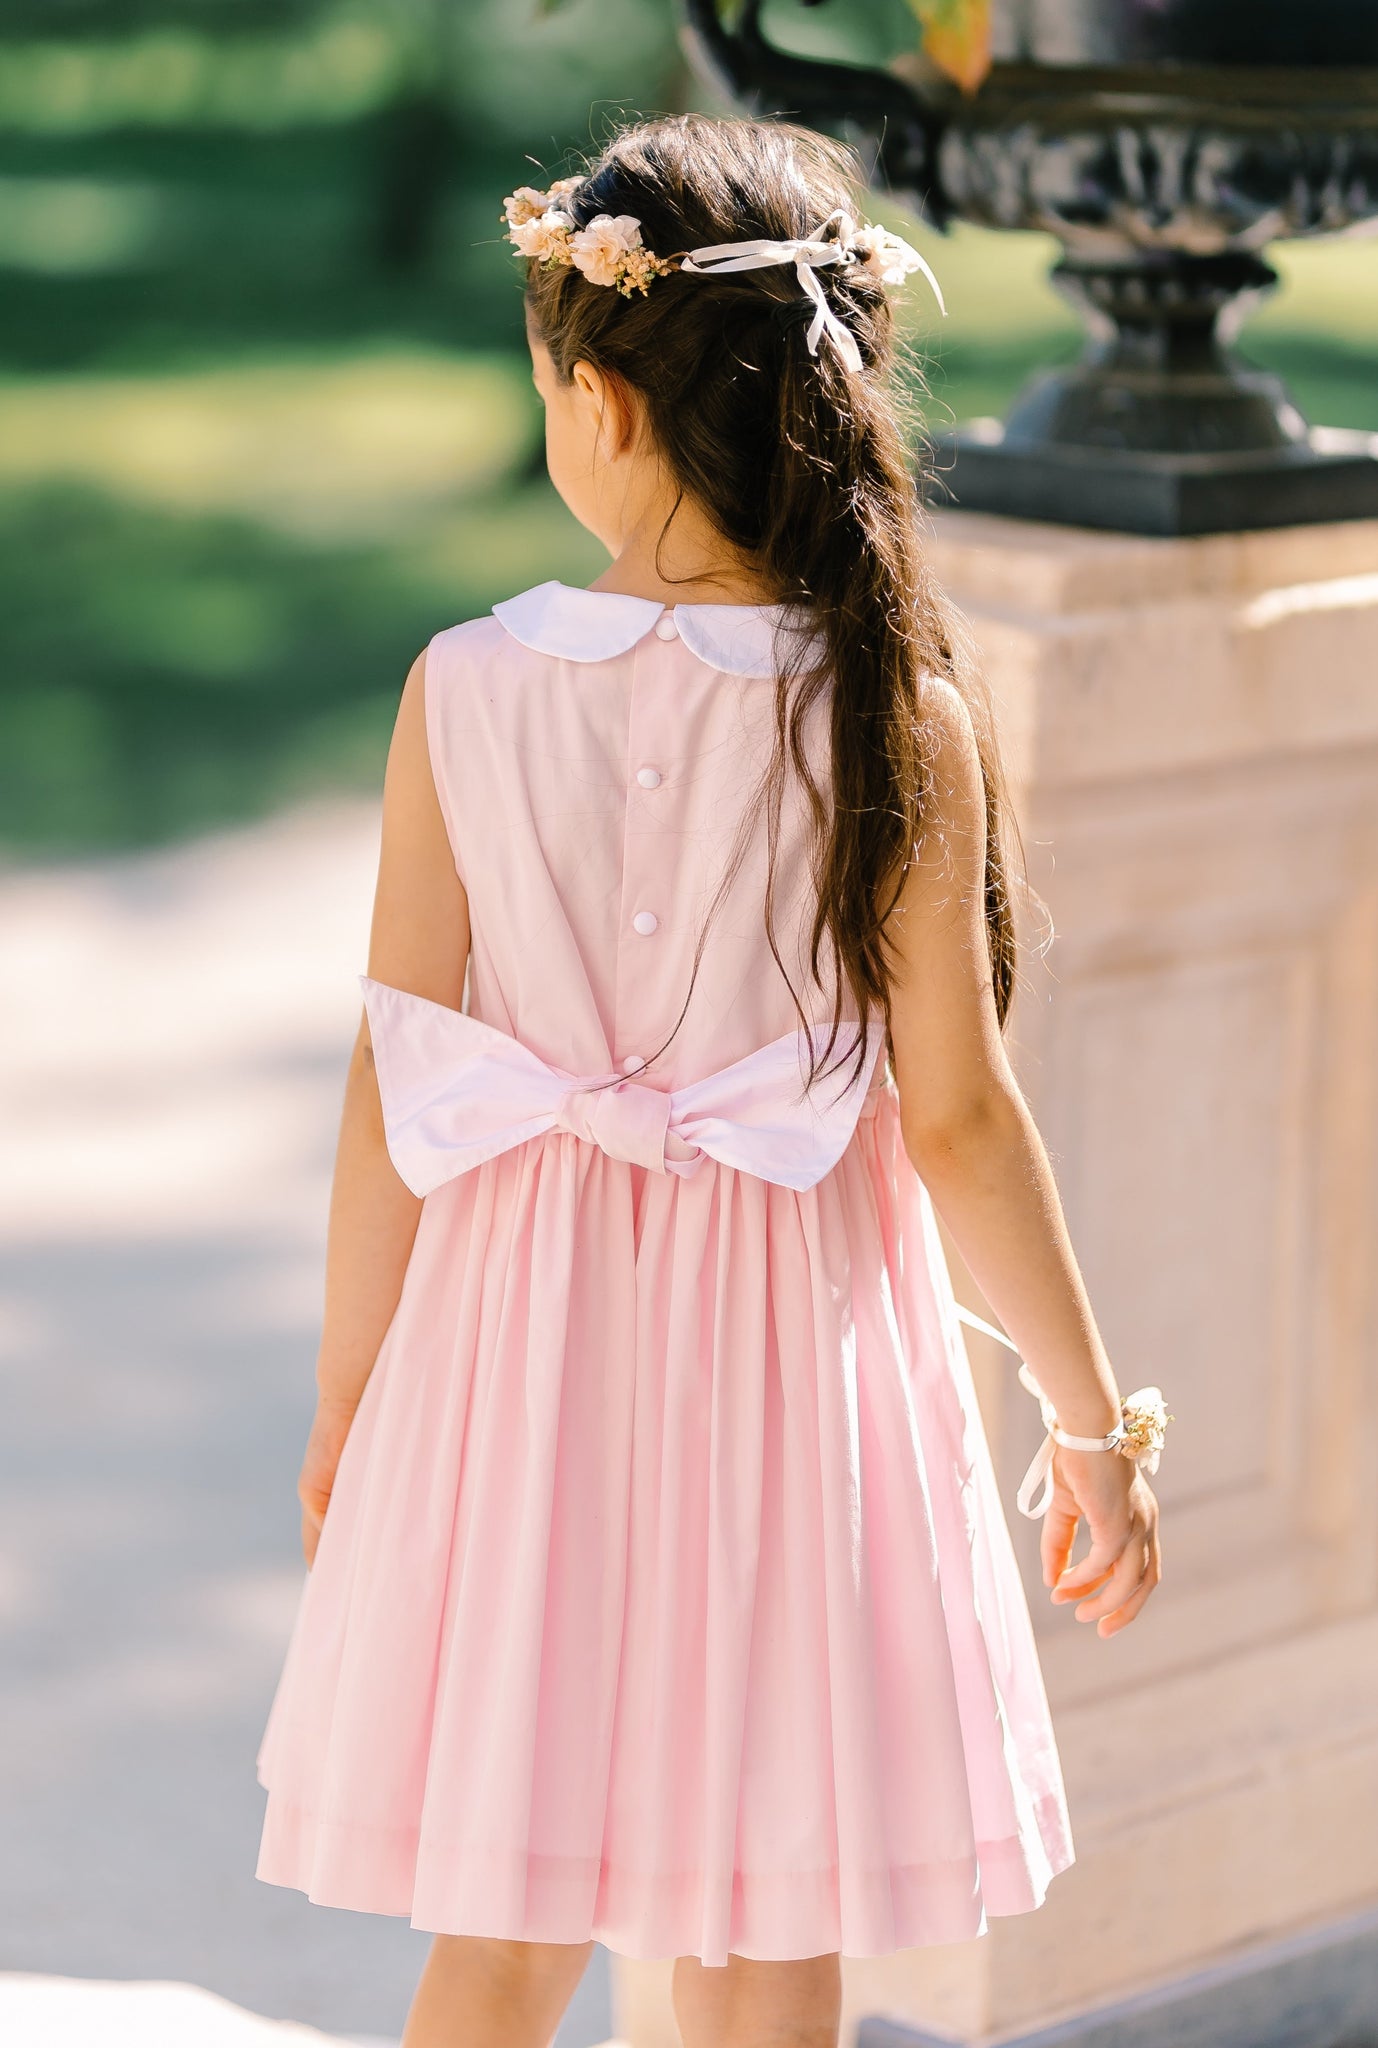 Antoinette Paris | Dresses Smocked Handmade